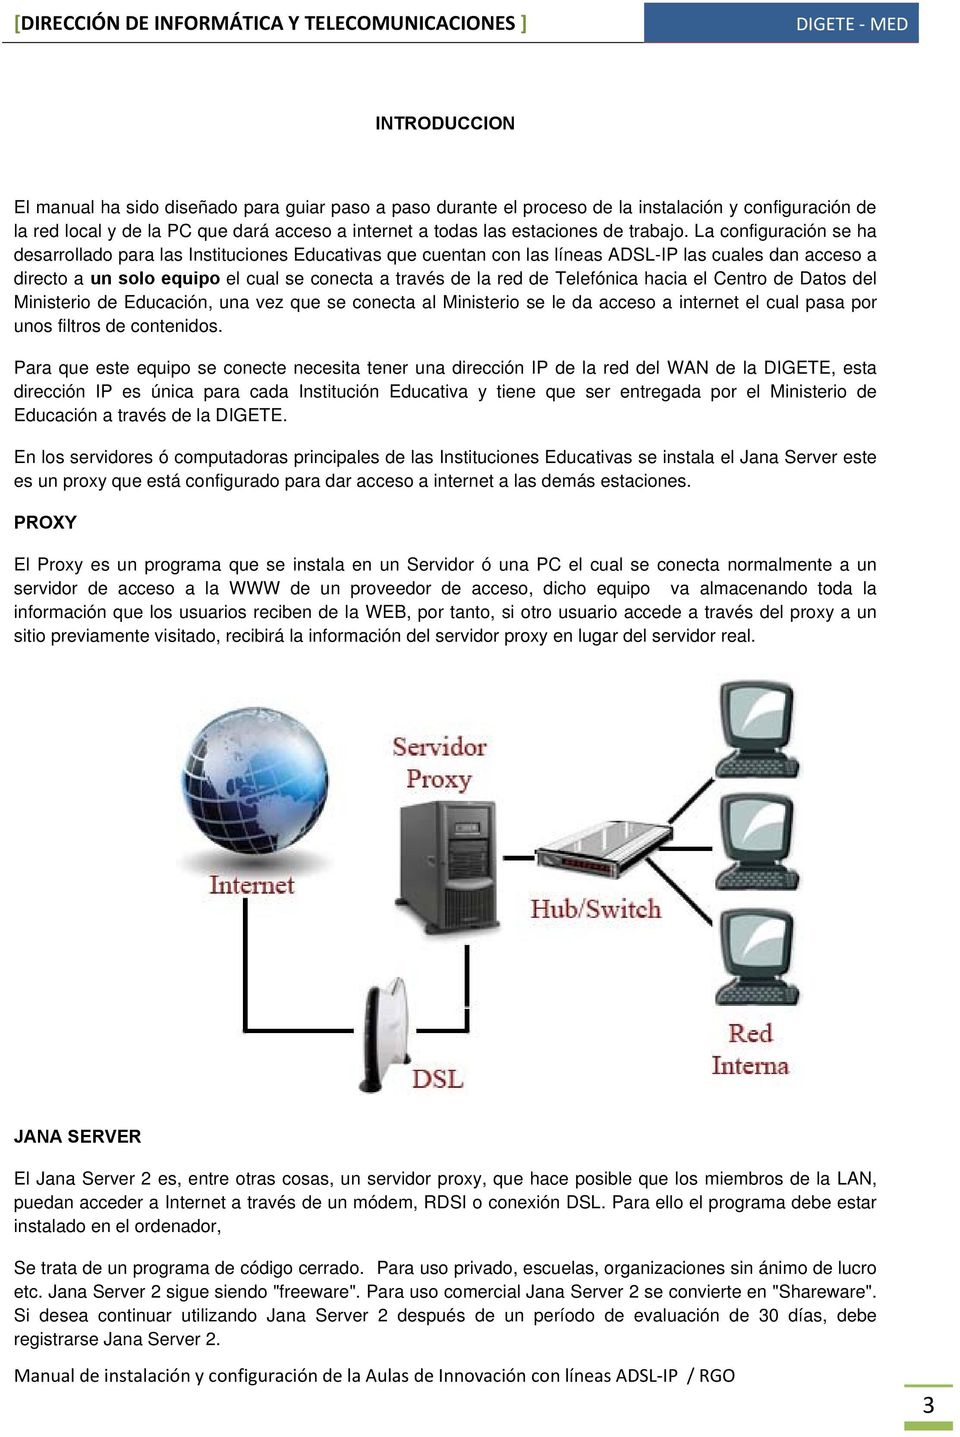 La configuración se ha desarrollado para las Instituciones Educativas que cuentan con las líneas ADSL-IP las cuales dan acceso a directo a un solo equipo el cual se conecta a través de la red de